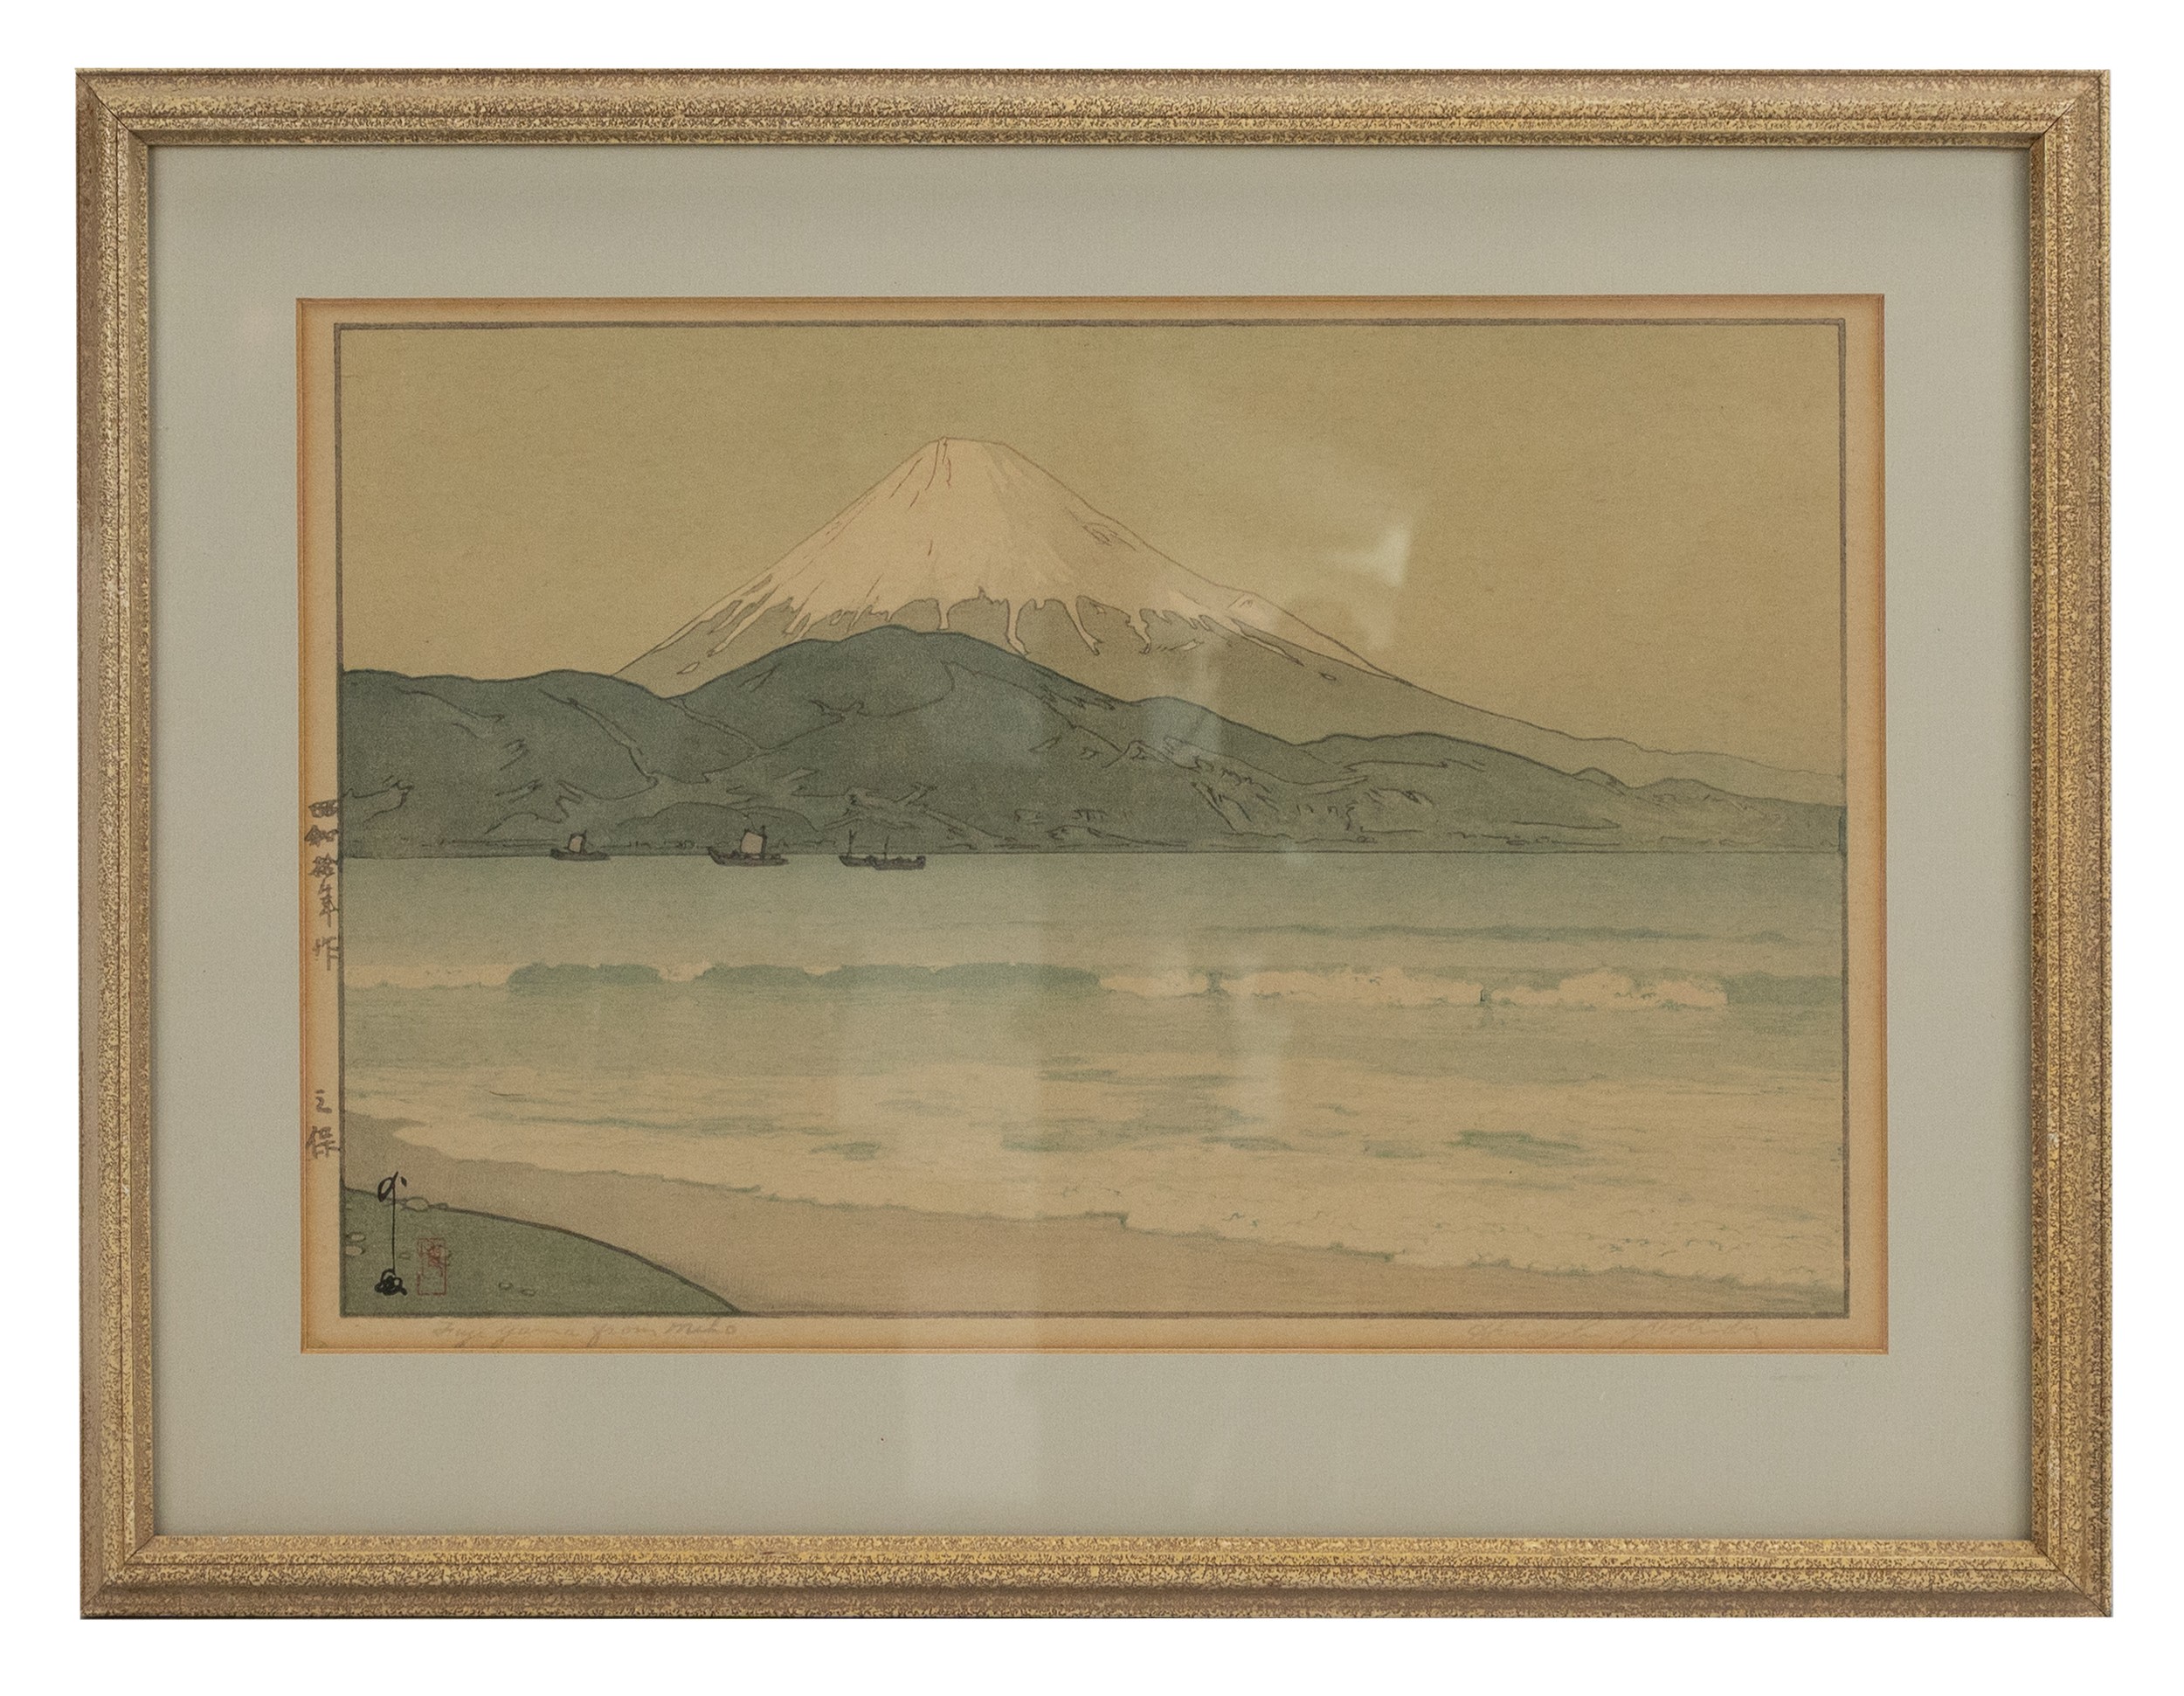 HIROSHI YOSHIDA, JAPAN (1876-1950), Mount Fuji from Miho, 1935. A Japanese woodblock print signed - Image 2 of 3